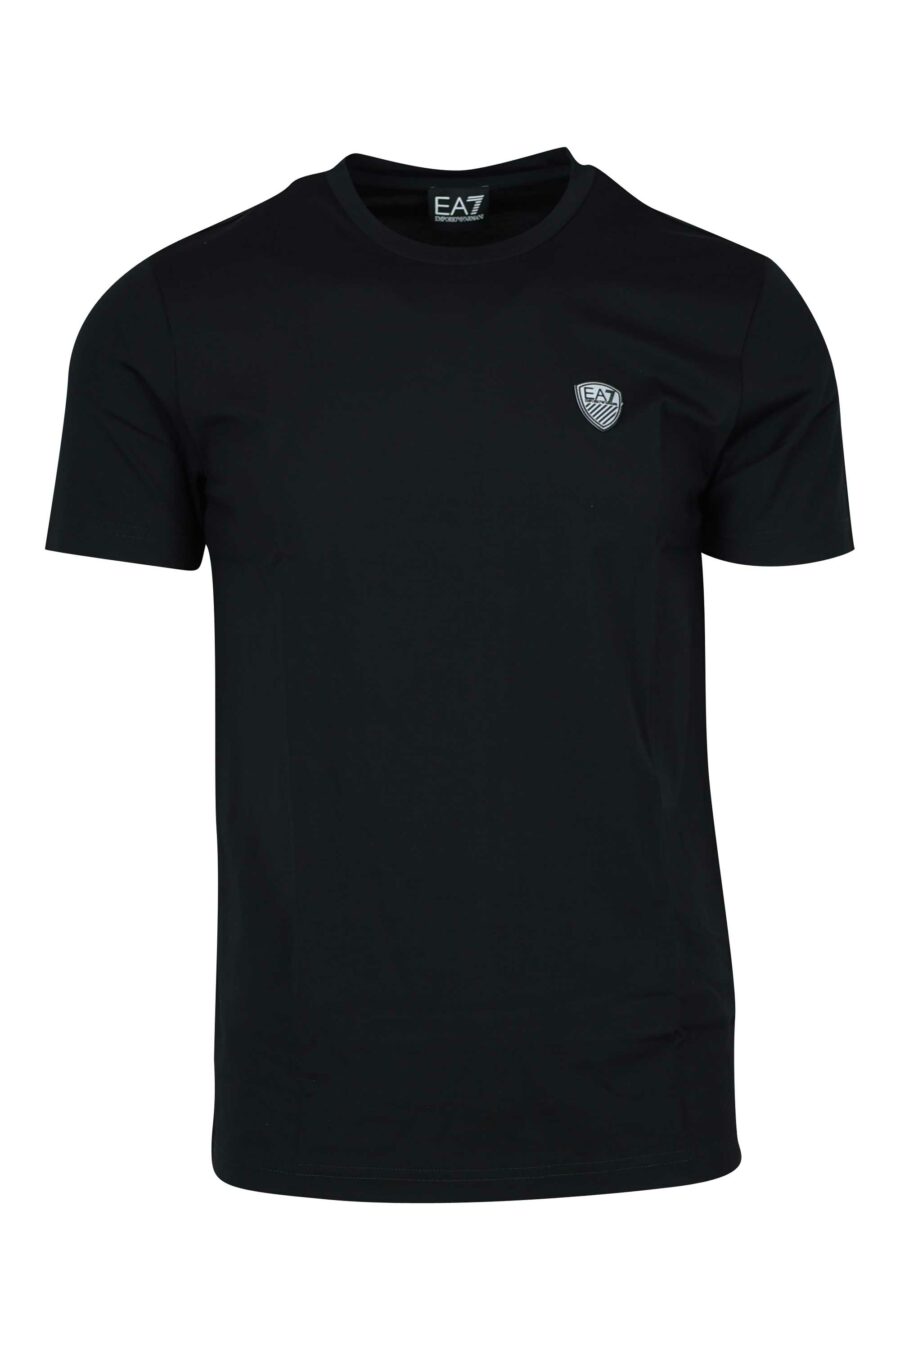 T-shirt noir avec écusson "lux identity" de minilogue - 8056787978973